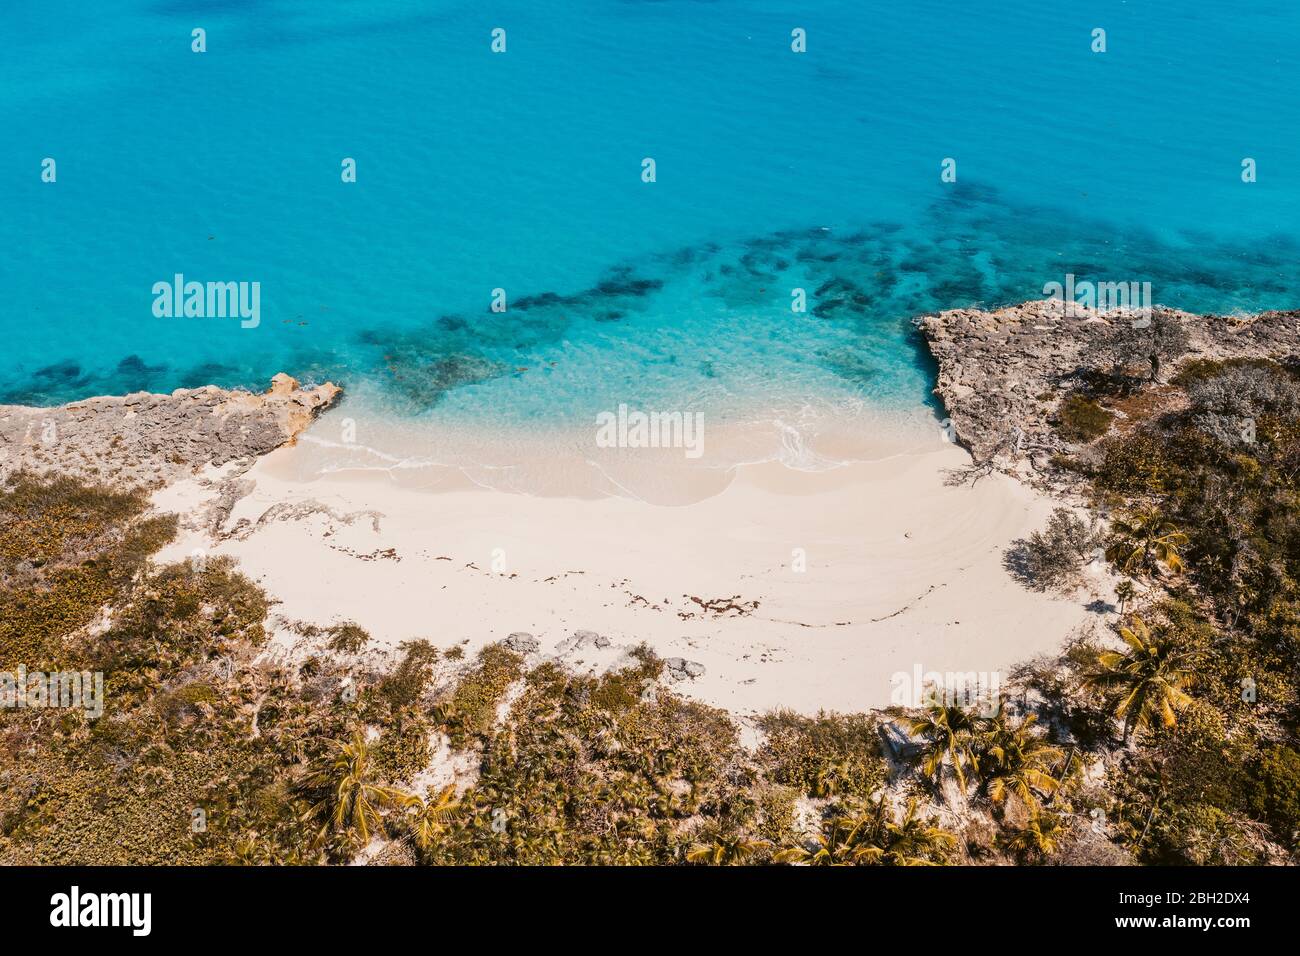 Caribbean, Bahamas, Exuma, Drone view of Pretty Molly Beach Stock Photo